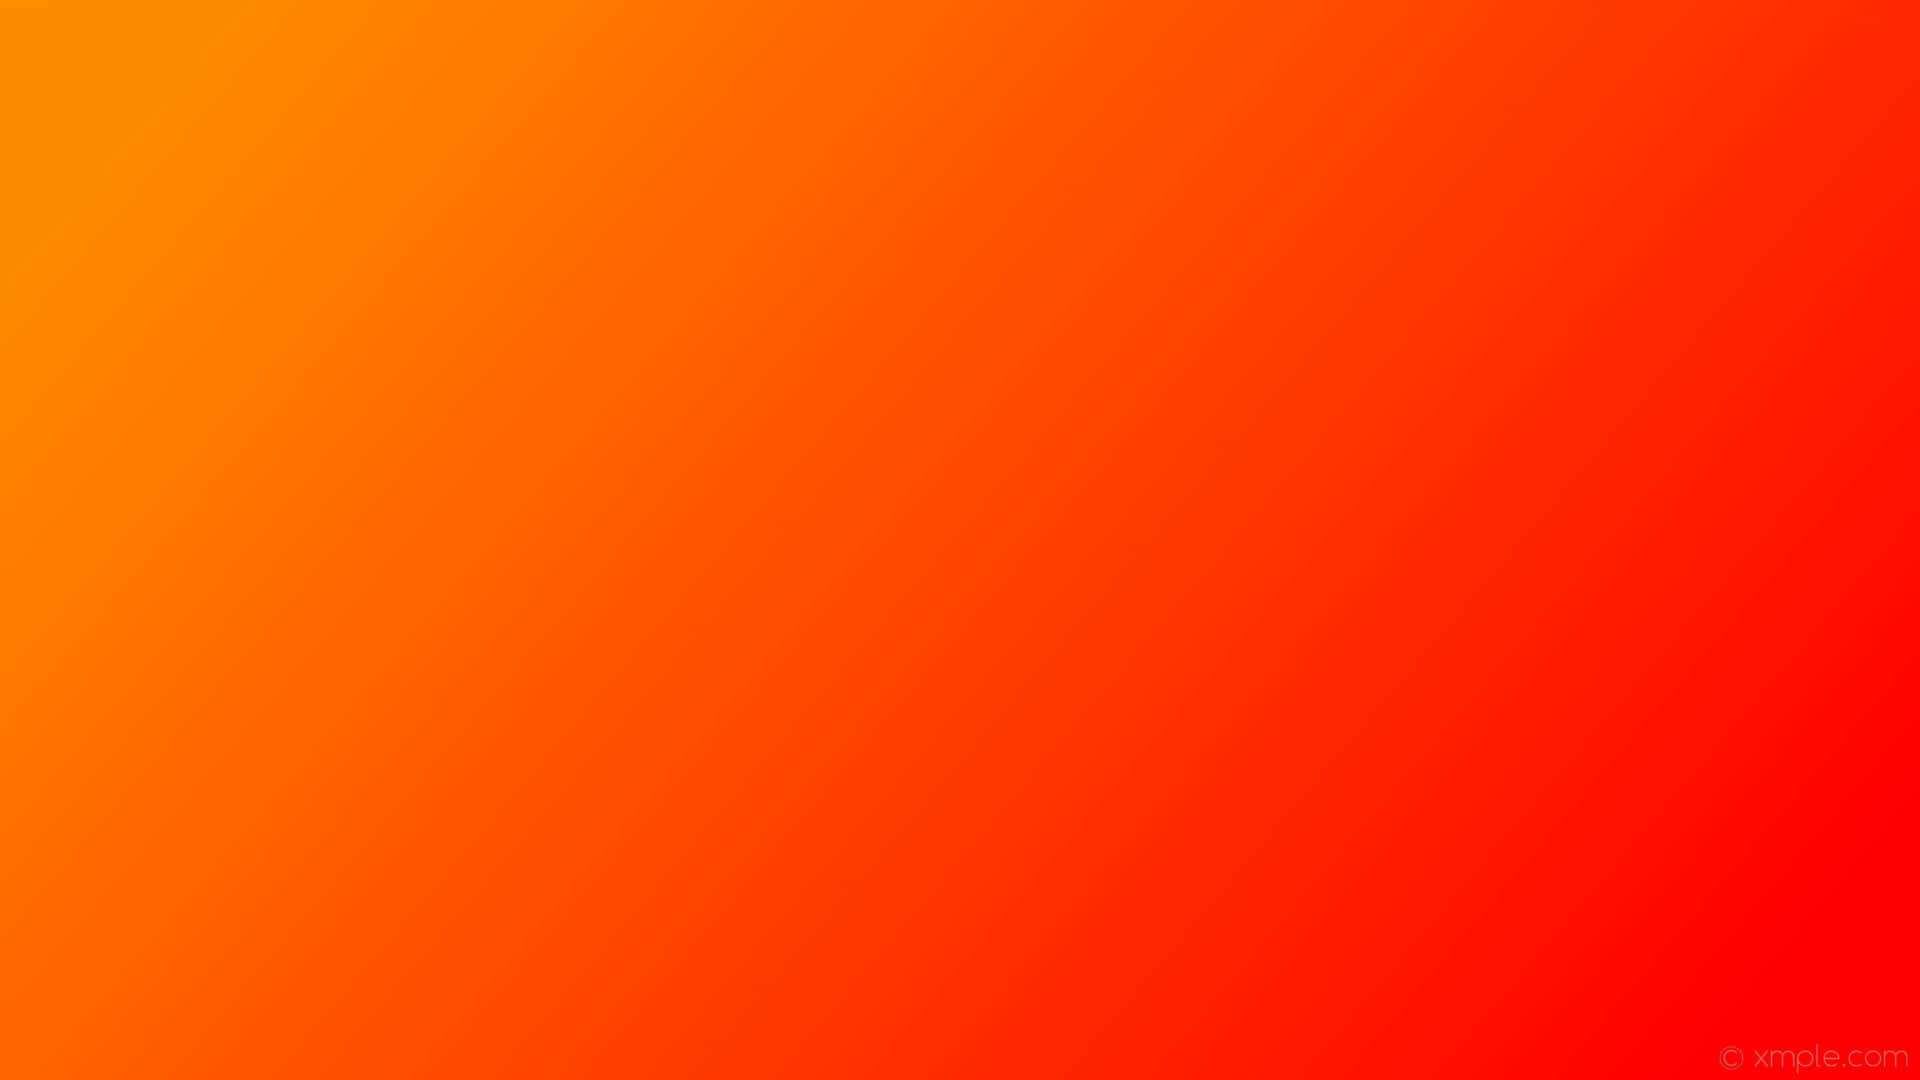 Einhintergrund In Orange Und Rot Mit Einem Verlauf Wallpaper